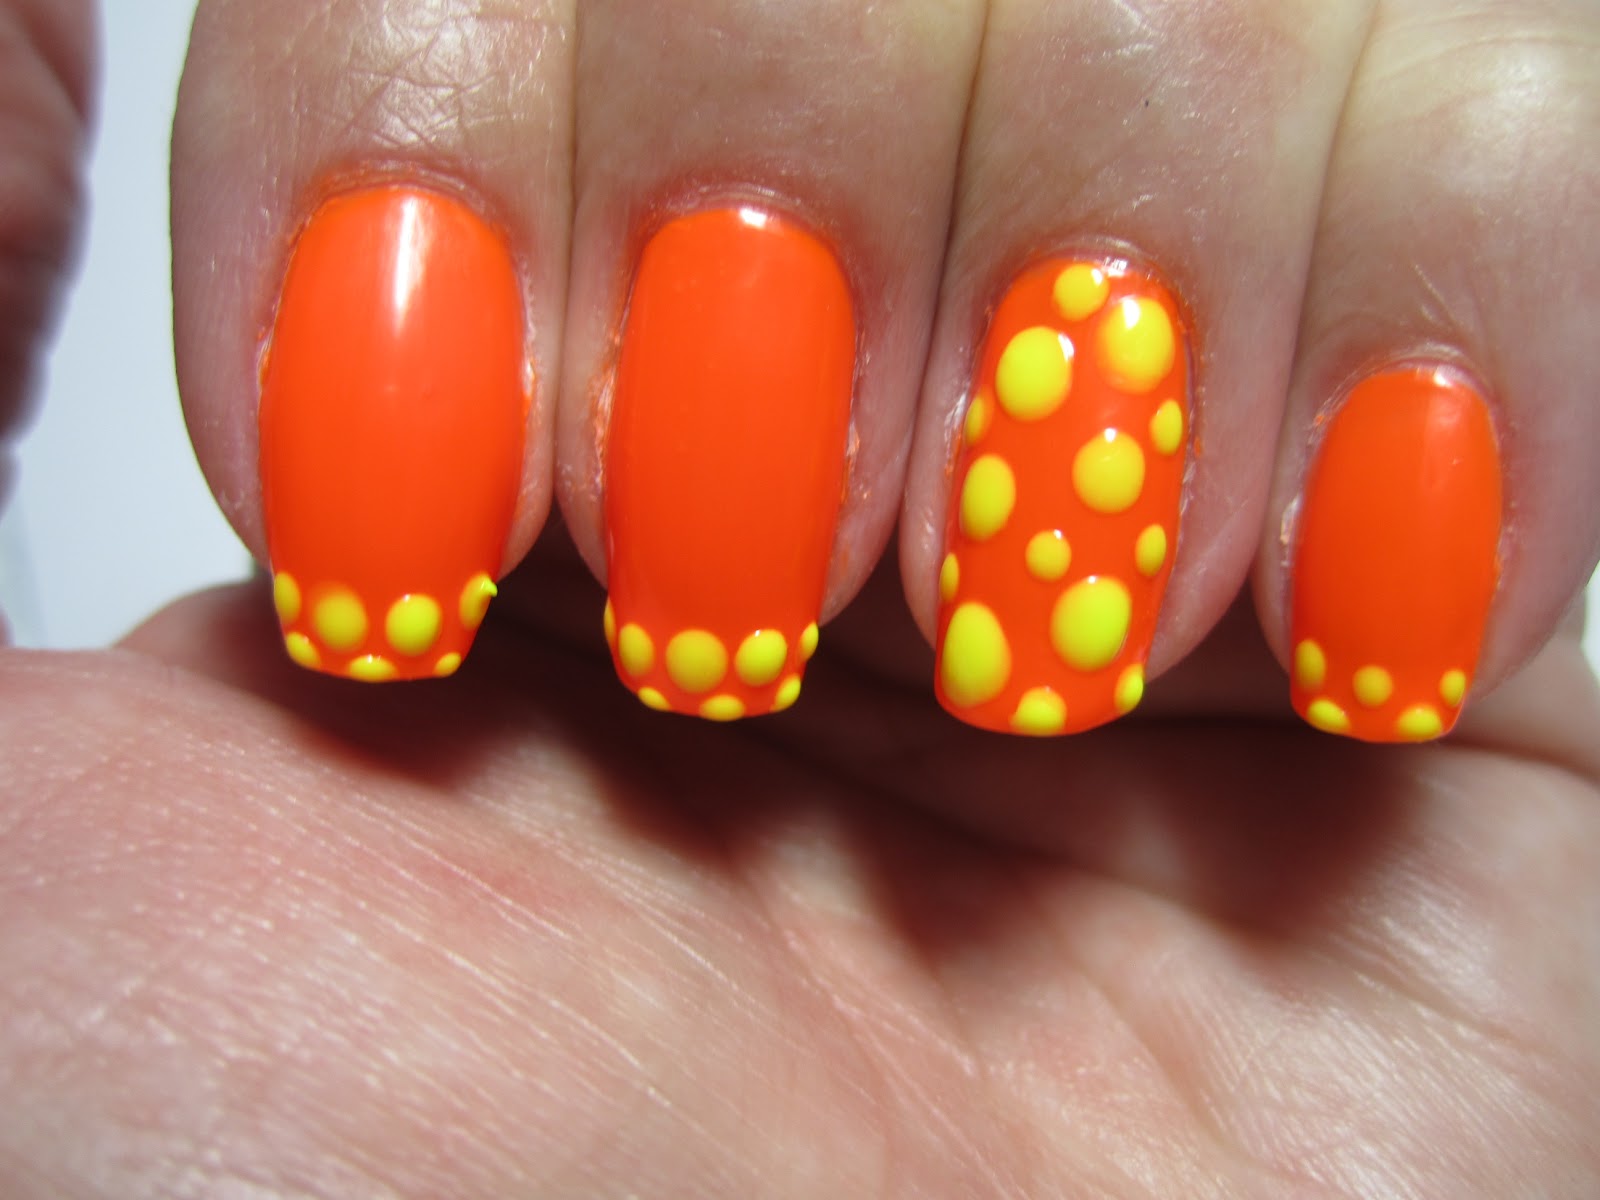 Colorsplash Nails: April 2012